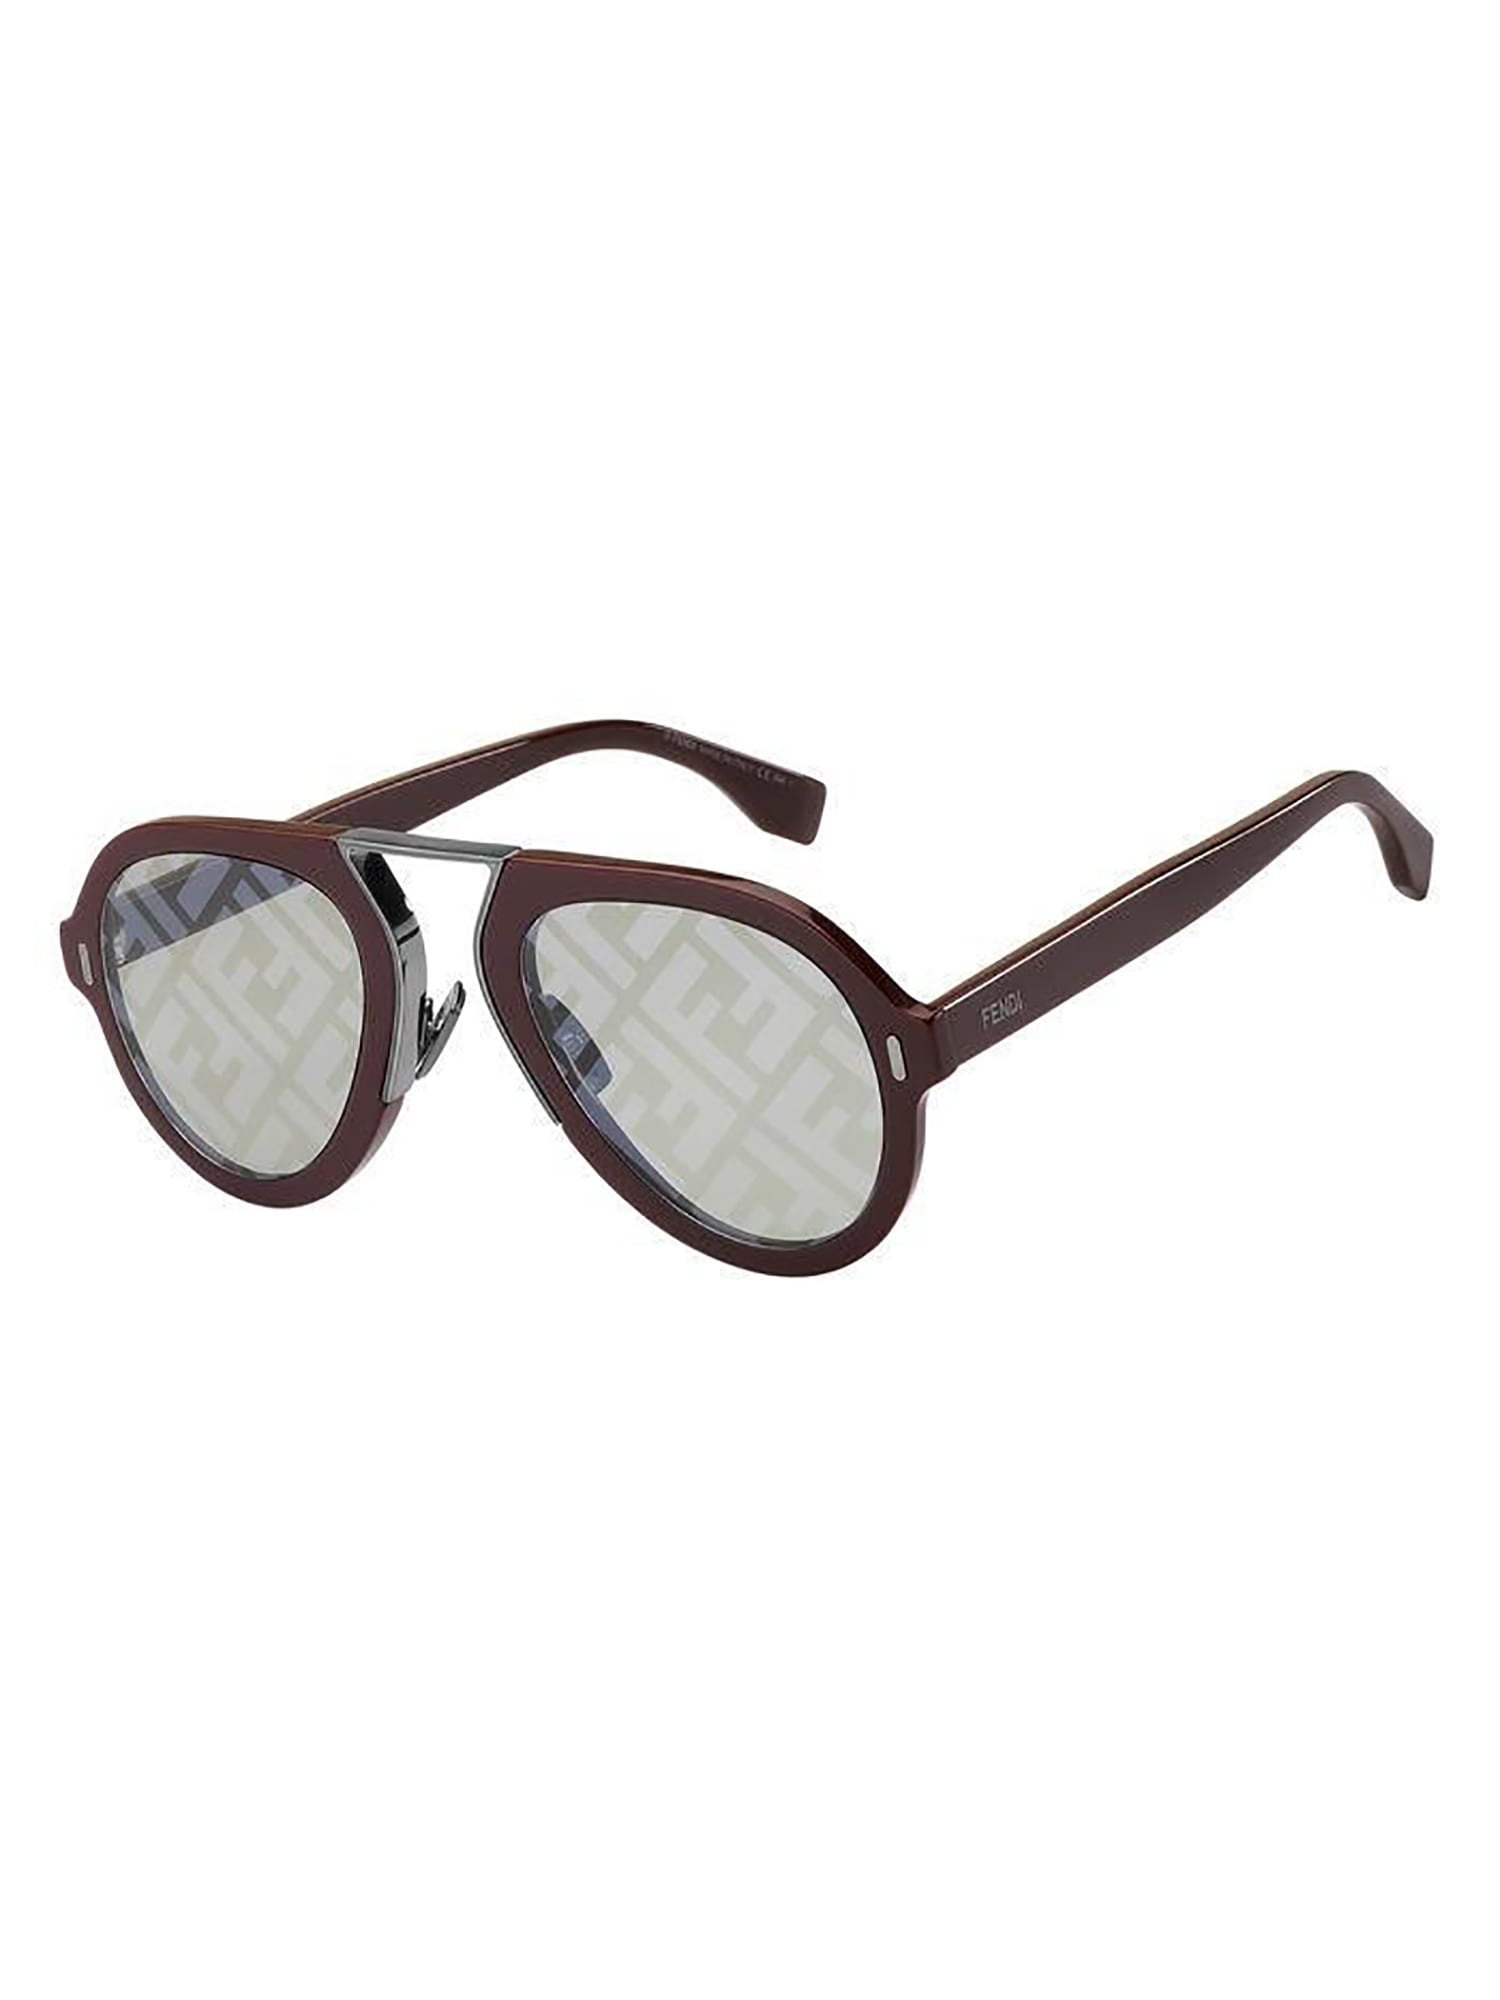 Fendi Ff M0104/s Sunglasses In Lhf/rx Burgundy